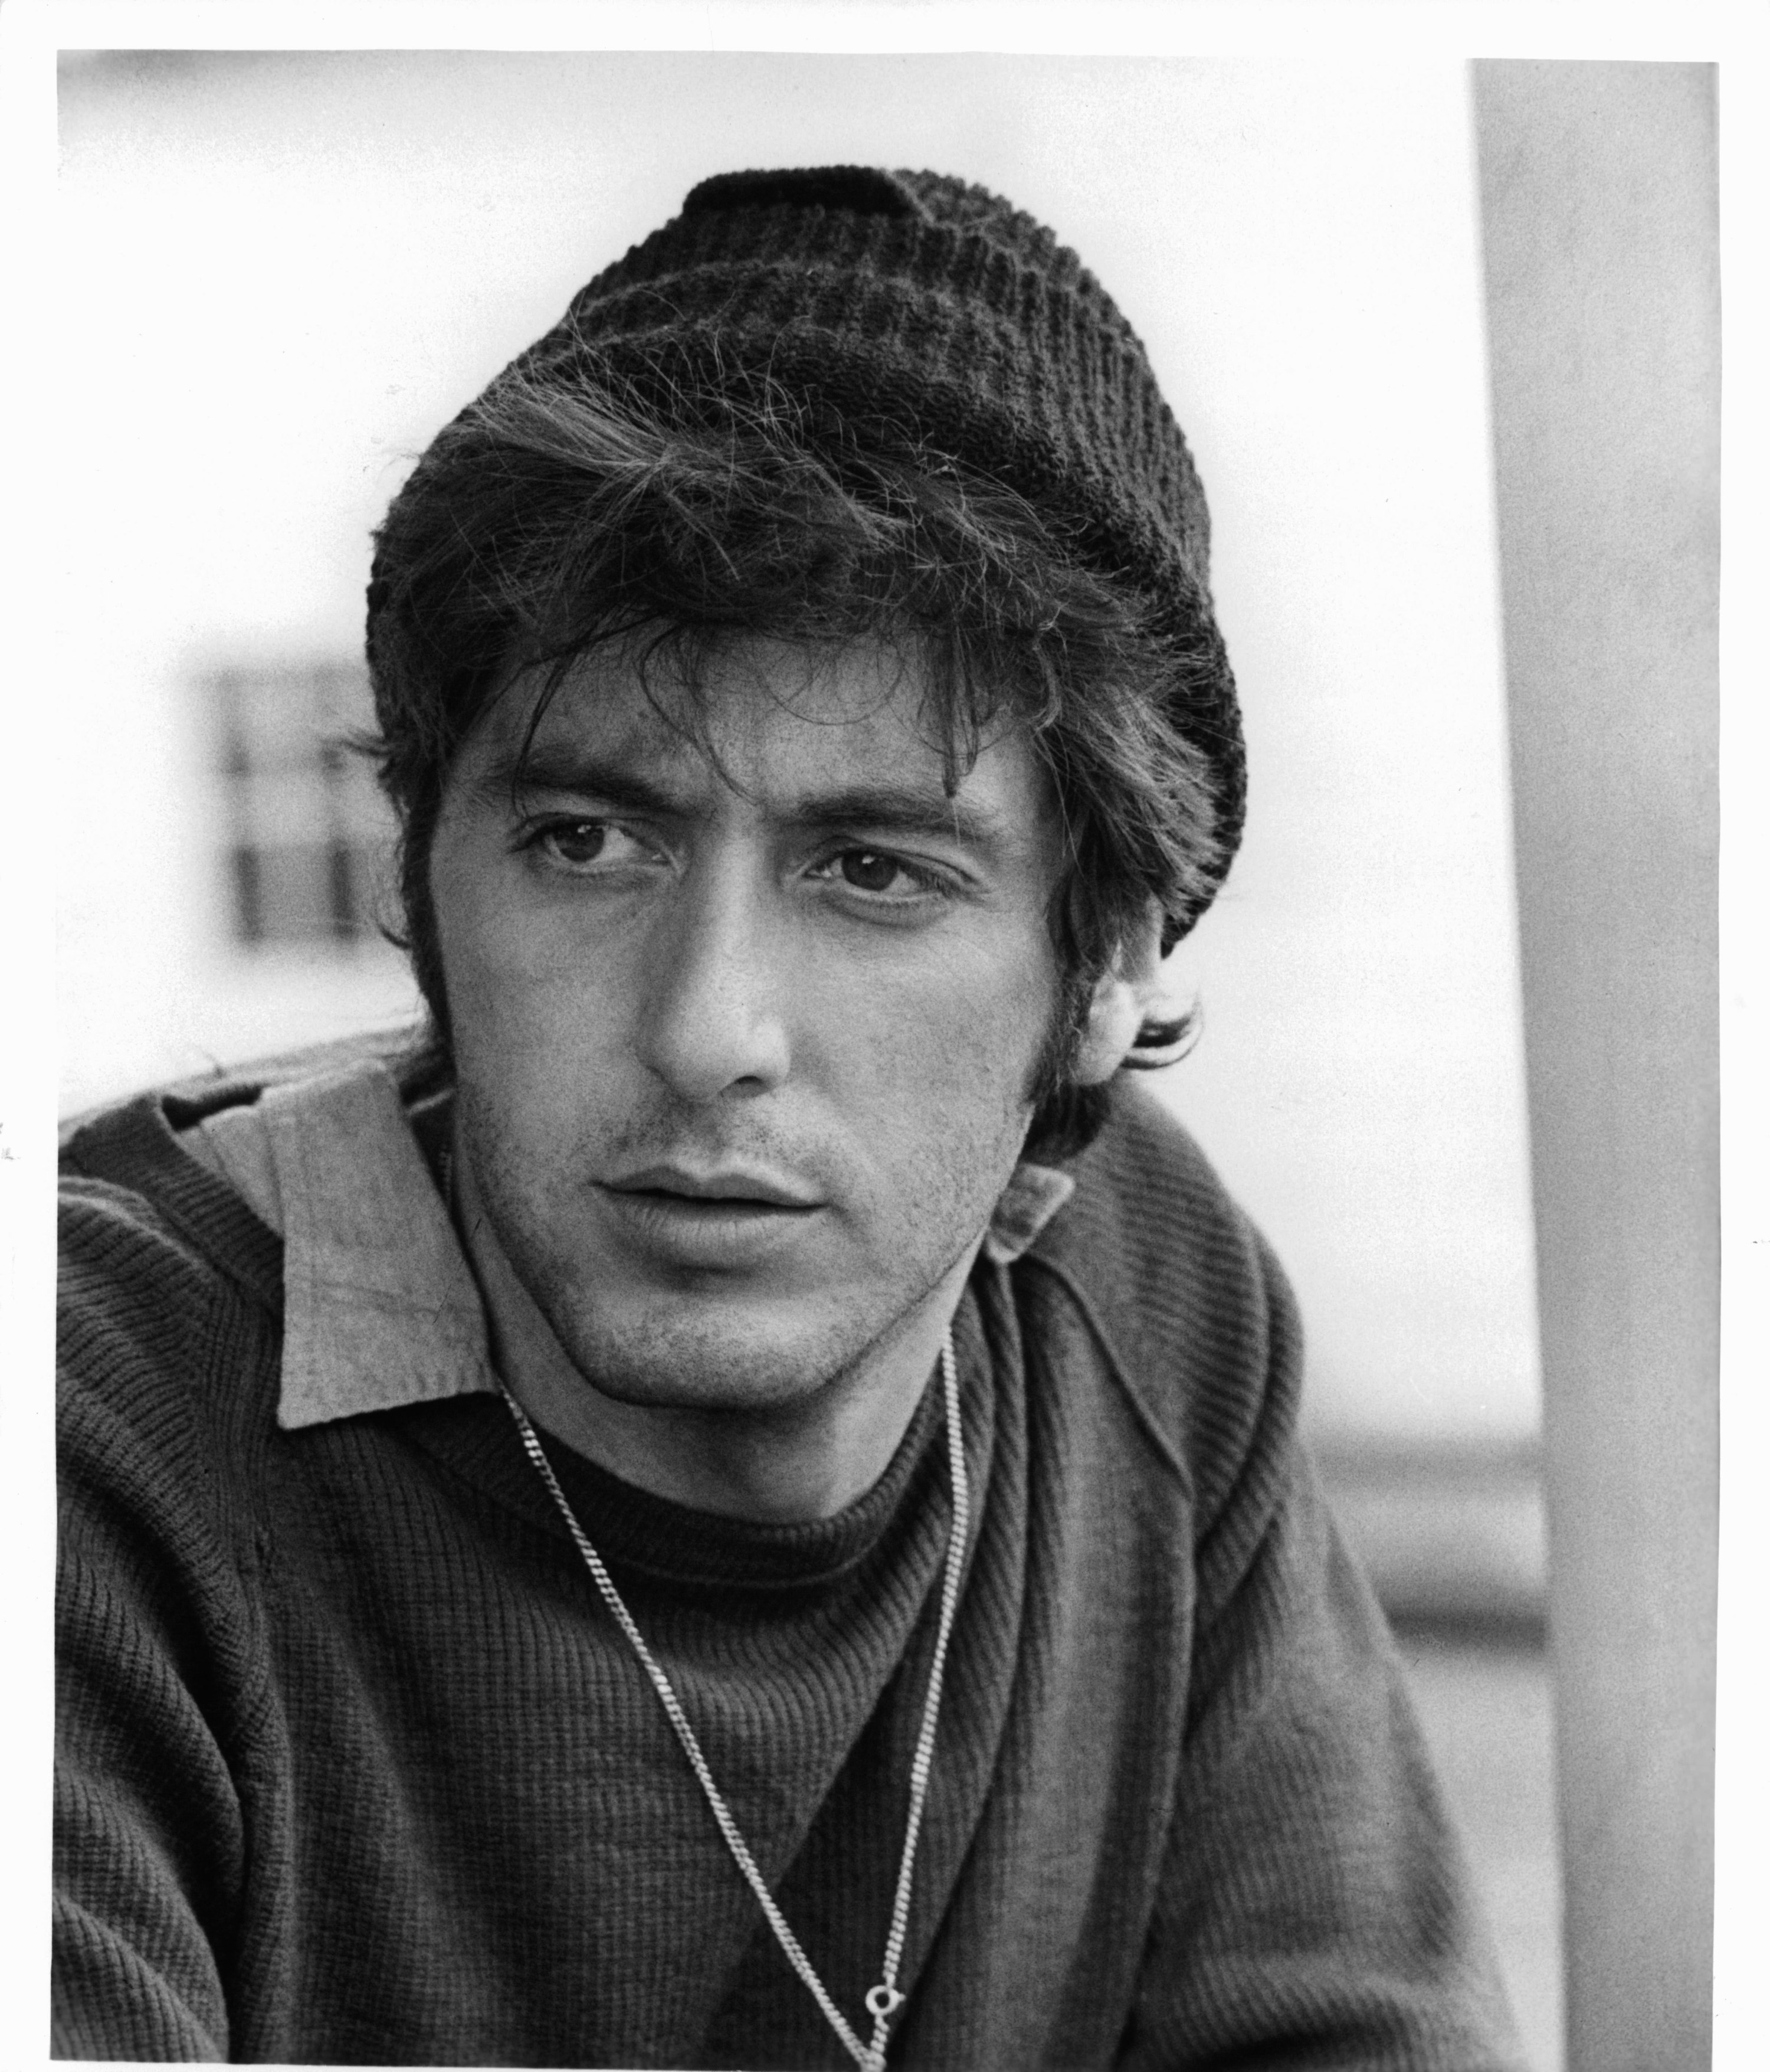 Young Al Pacino